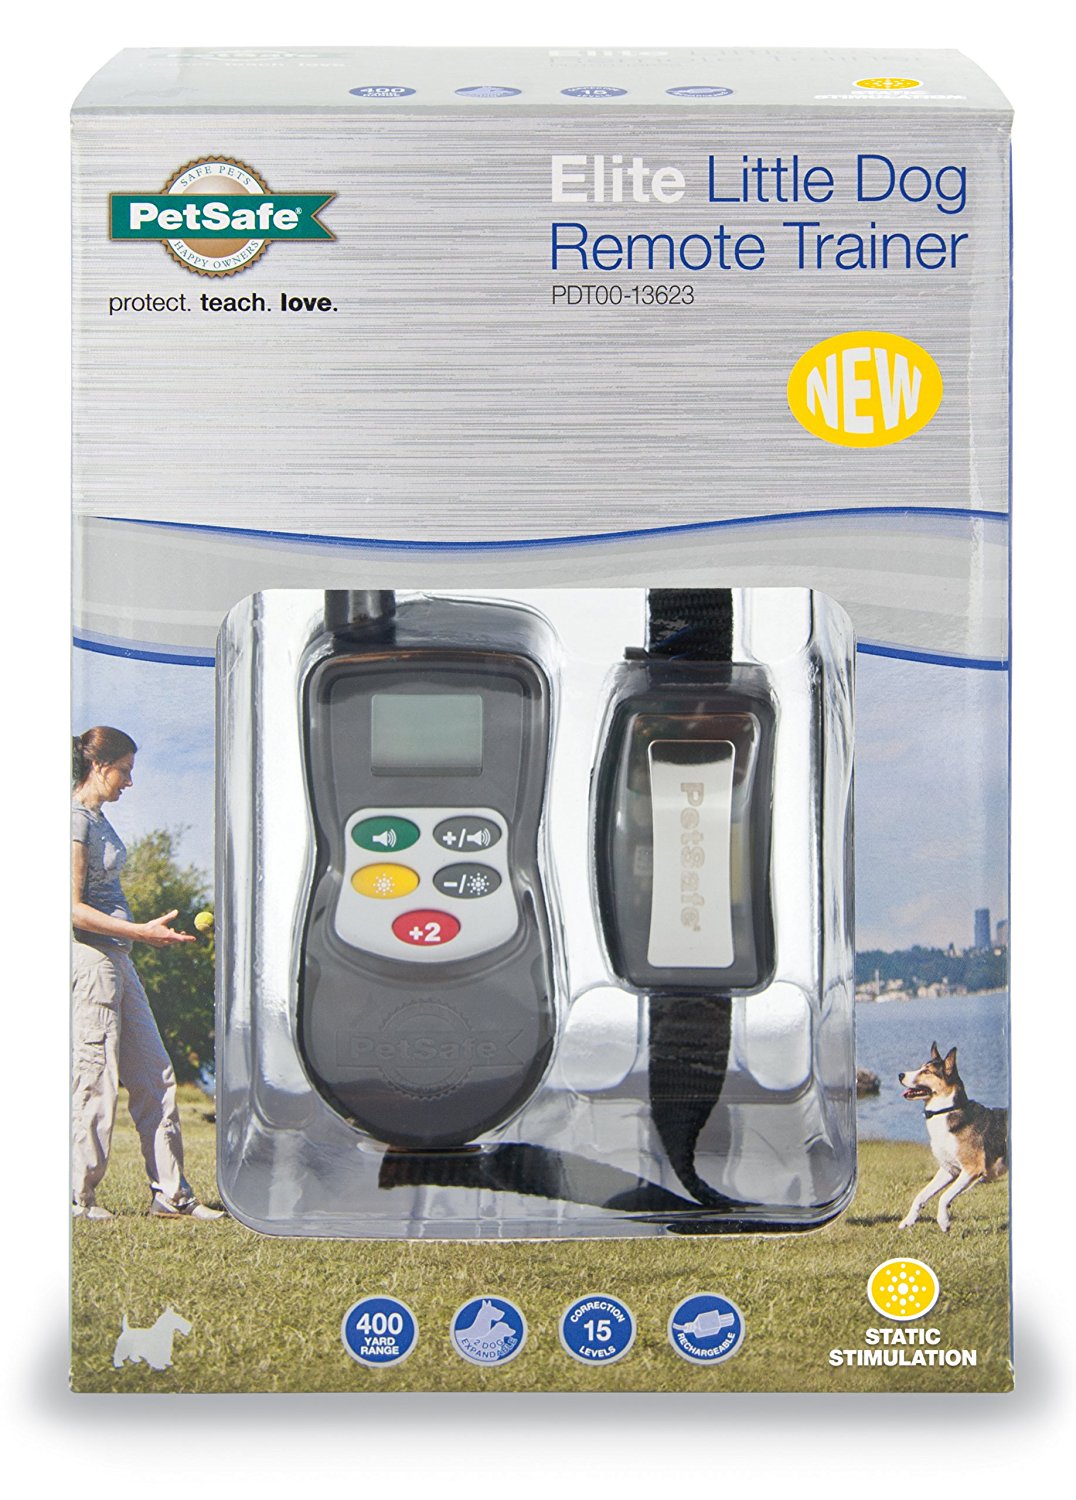 Petsafe Pdt00-13623 Elite Little Dog Remote Trainer